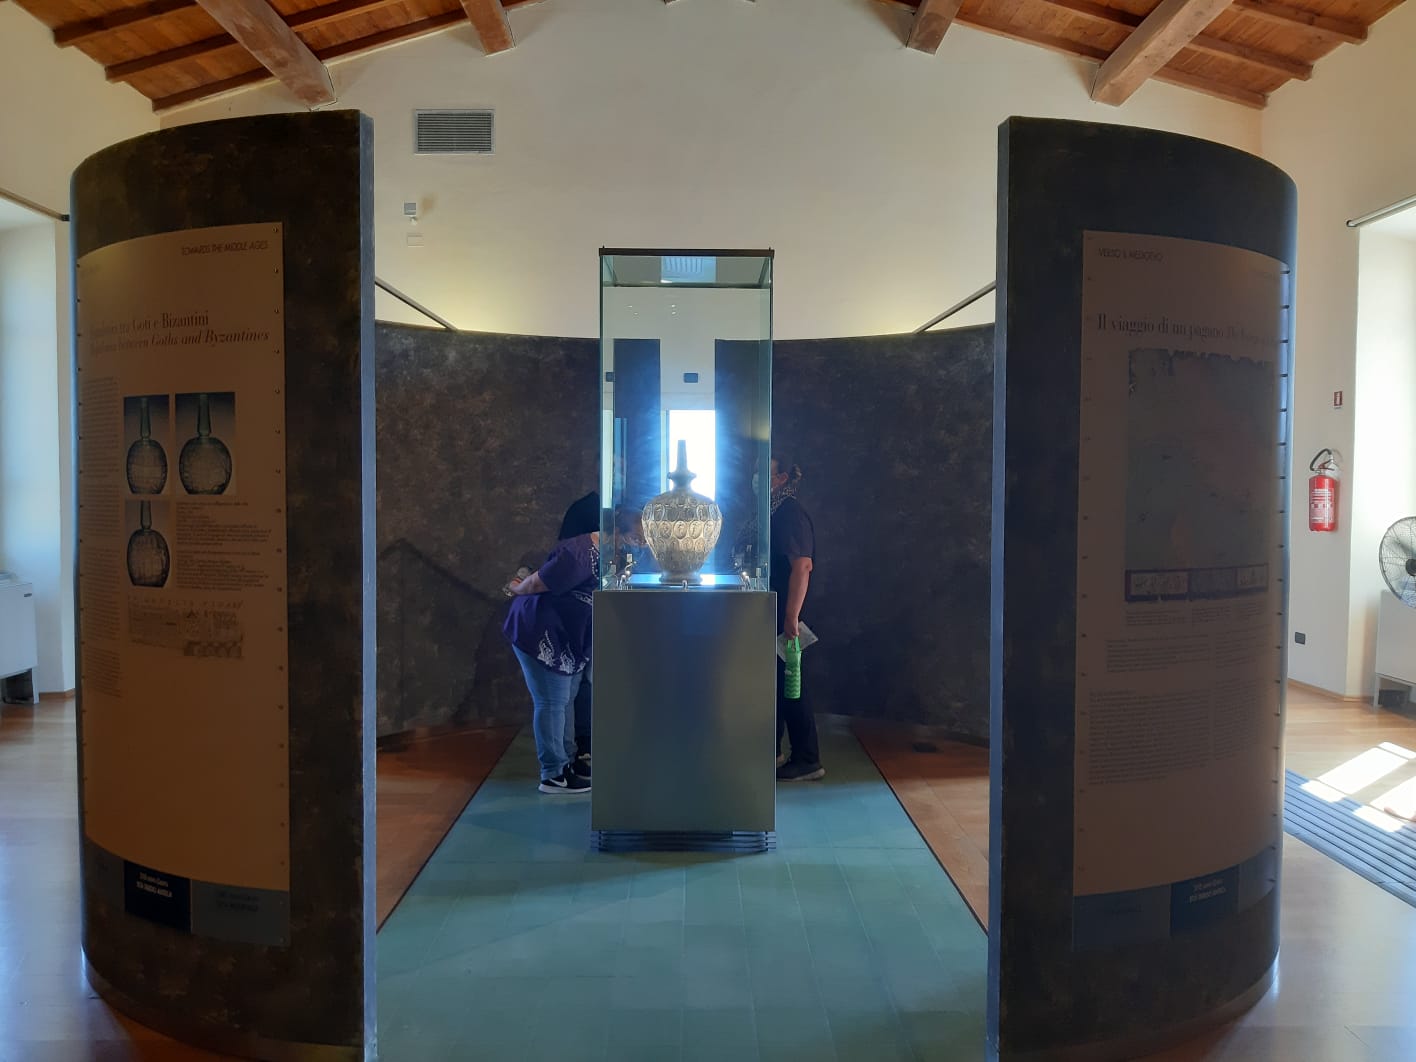 Visita speciale con l’archeologo al Museo del territorio di Populonia a Piombino